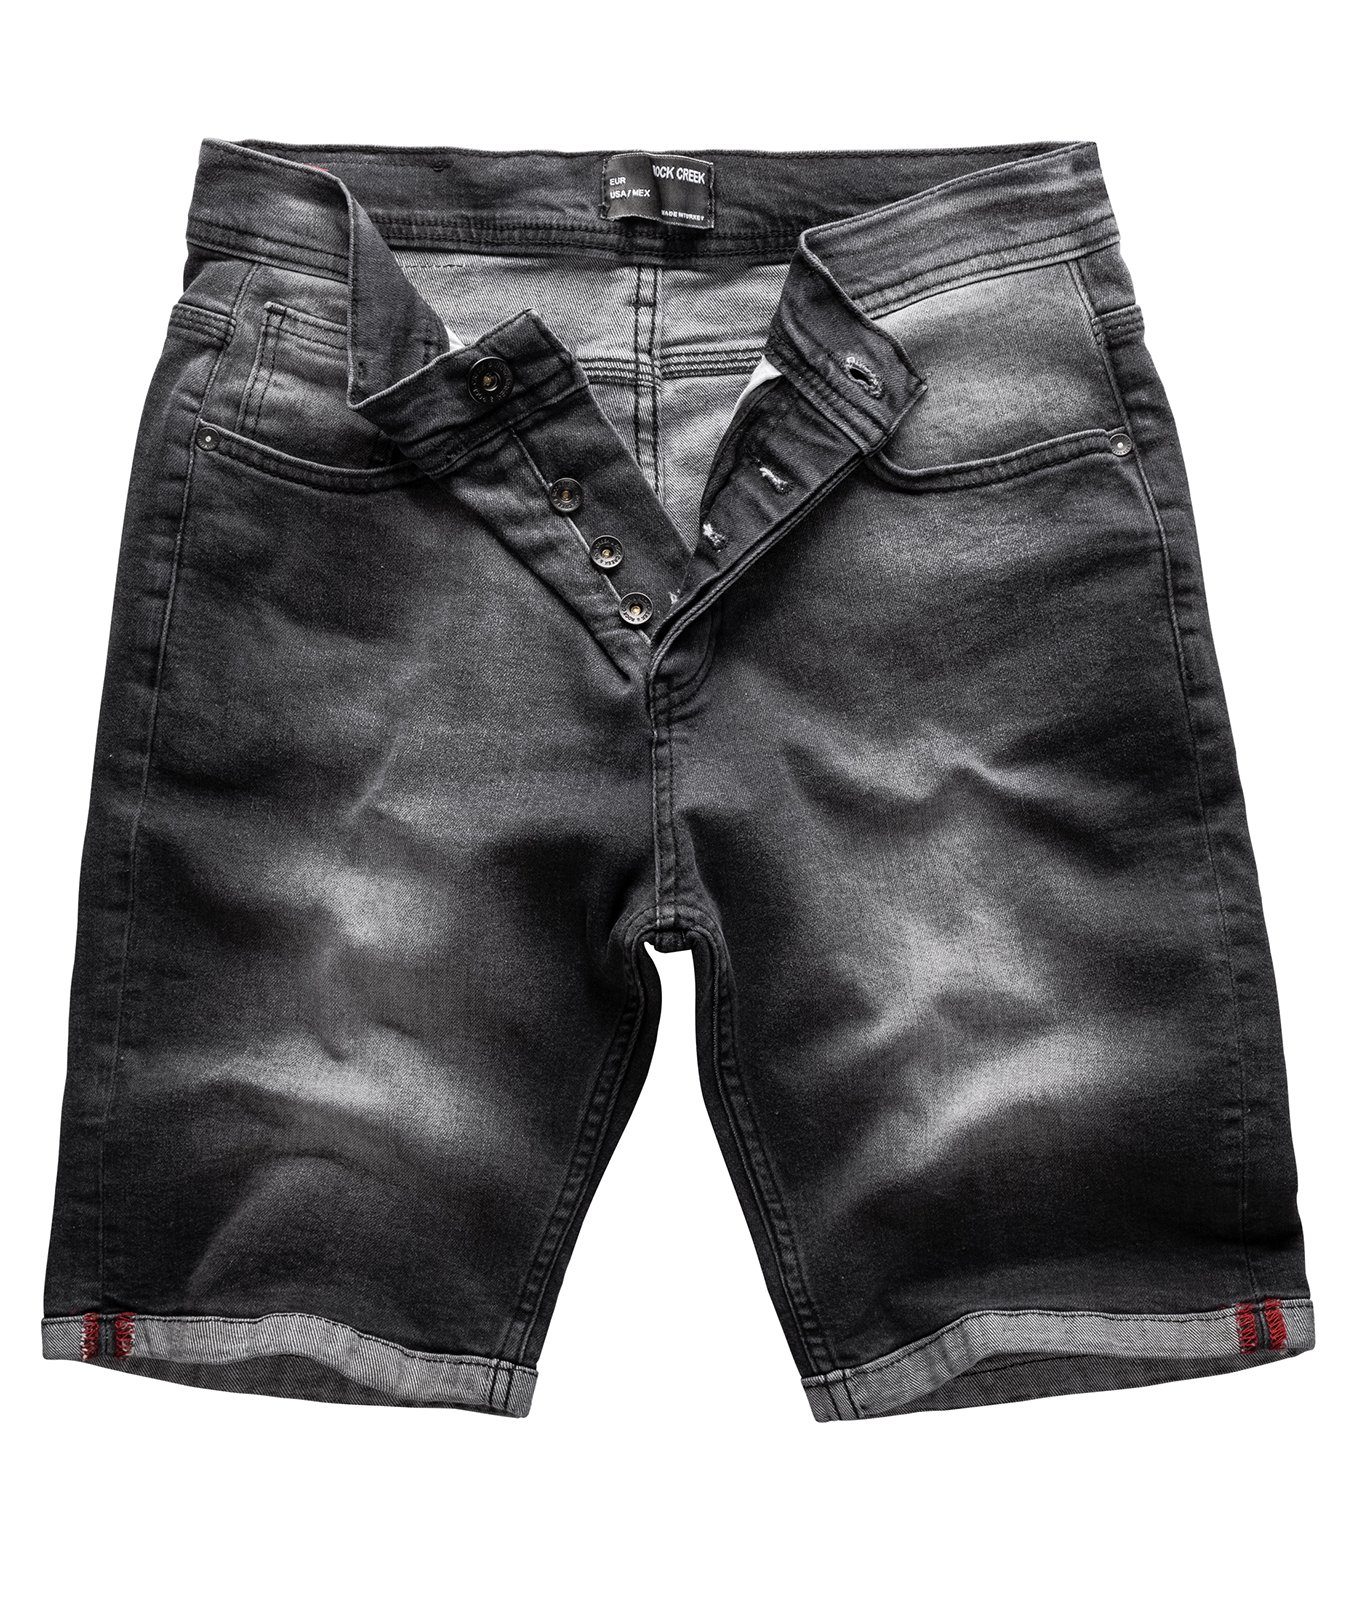 Jeansshorts Denim Herren Dunkelgrau RC-2214 Rock Creek Shorts